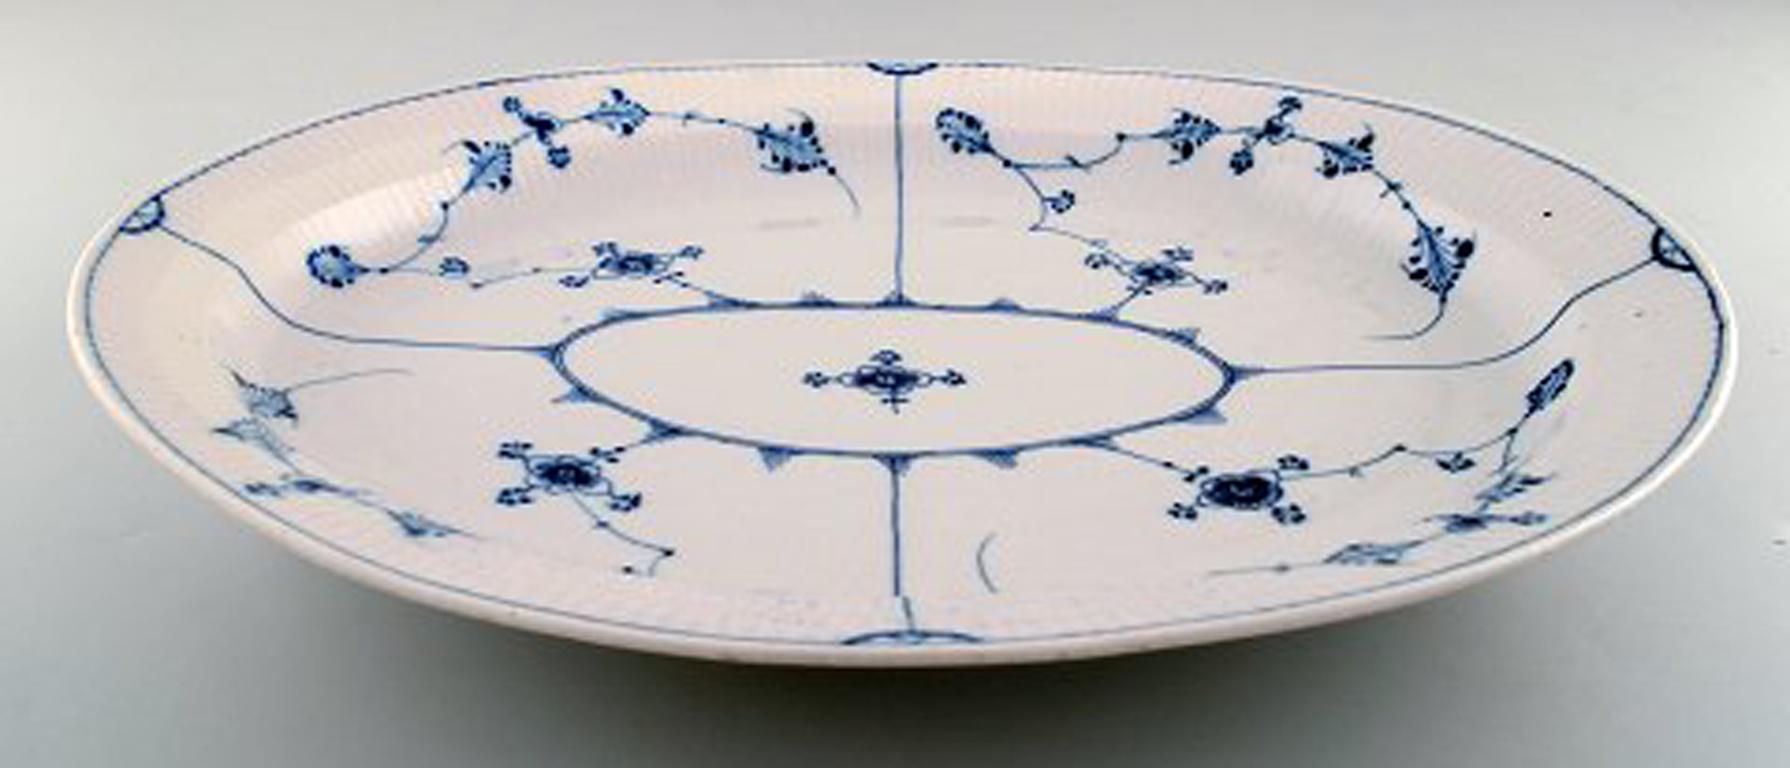 Ancien et rare grand plat ovale de Royal Copenhagen en qualité musée. Début du 19e siècle.
Mesures : 44 x 36 x 6 cm.
En très bon état.